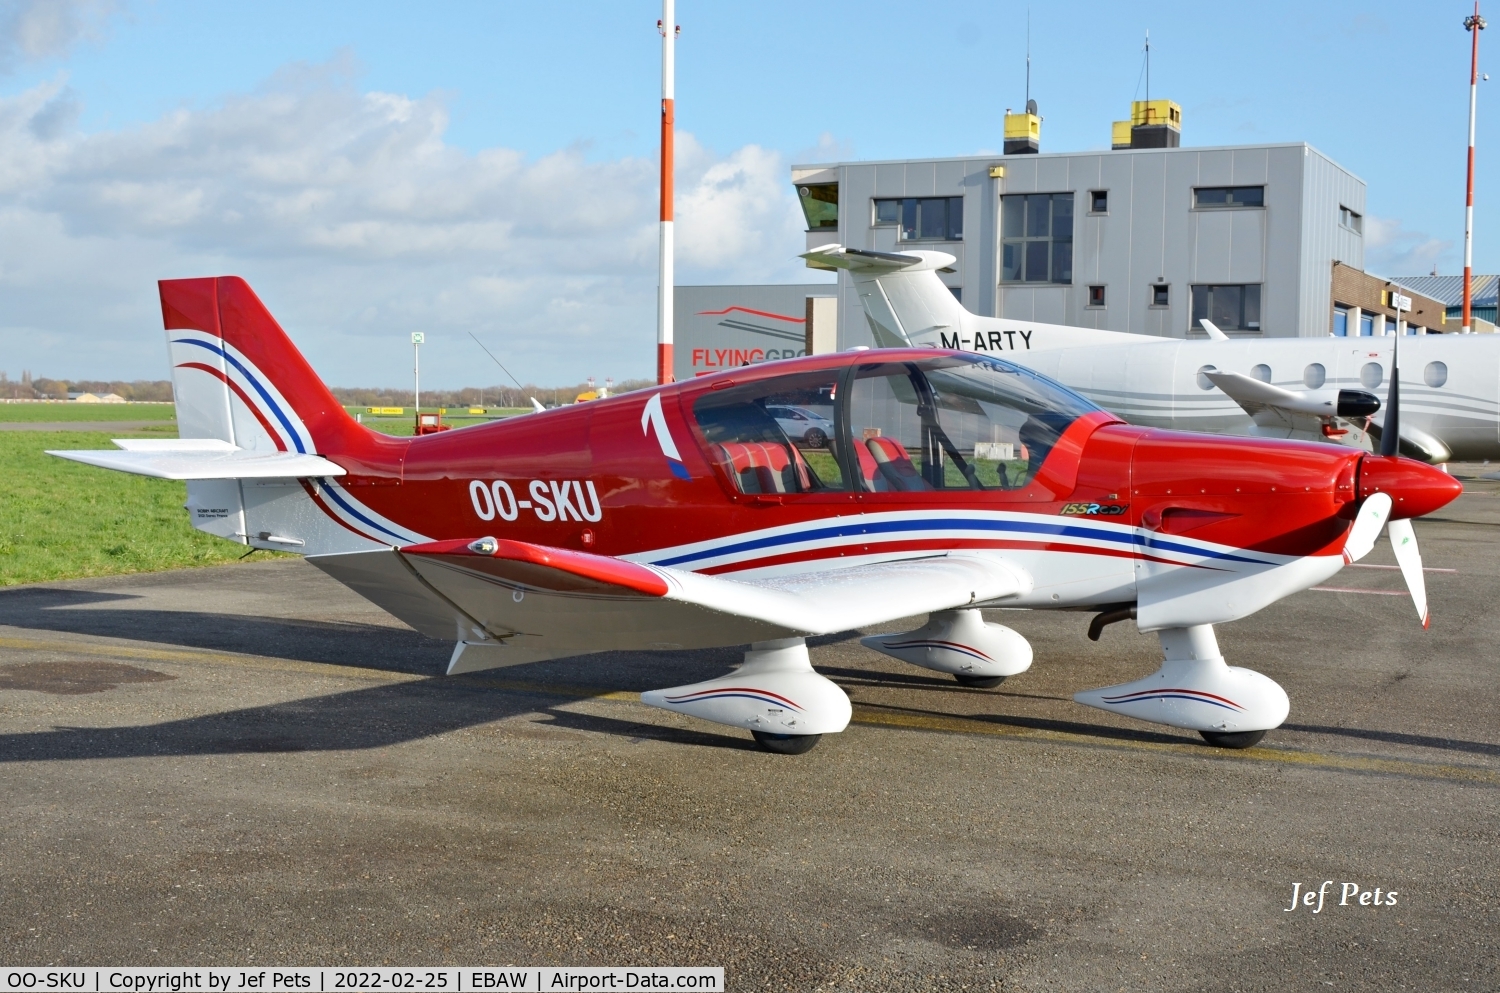 OO-SKU, 2014 Robin DR-401-155 CDI C/N 2675, At Antwerp Airport.